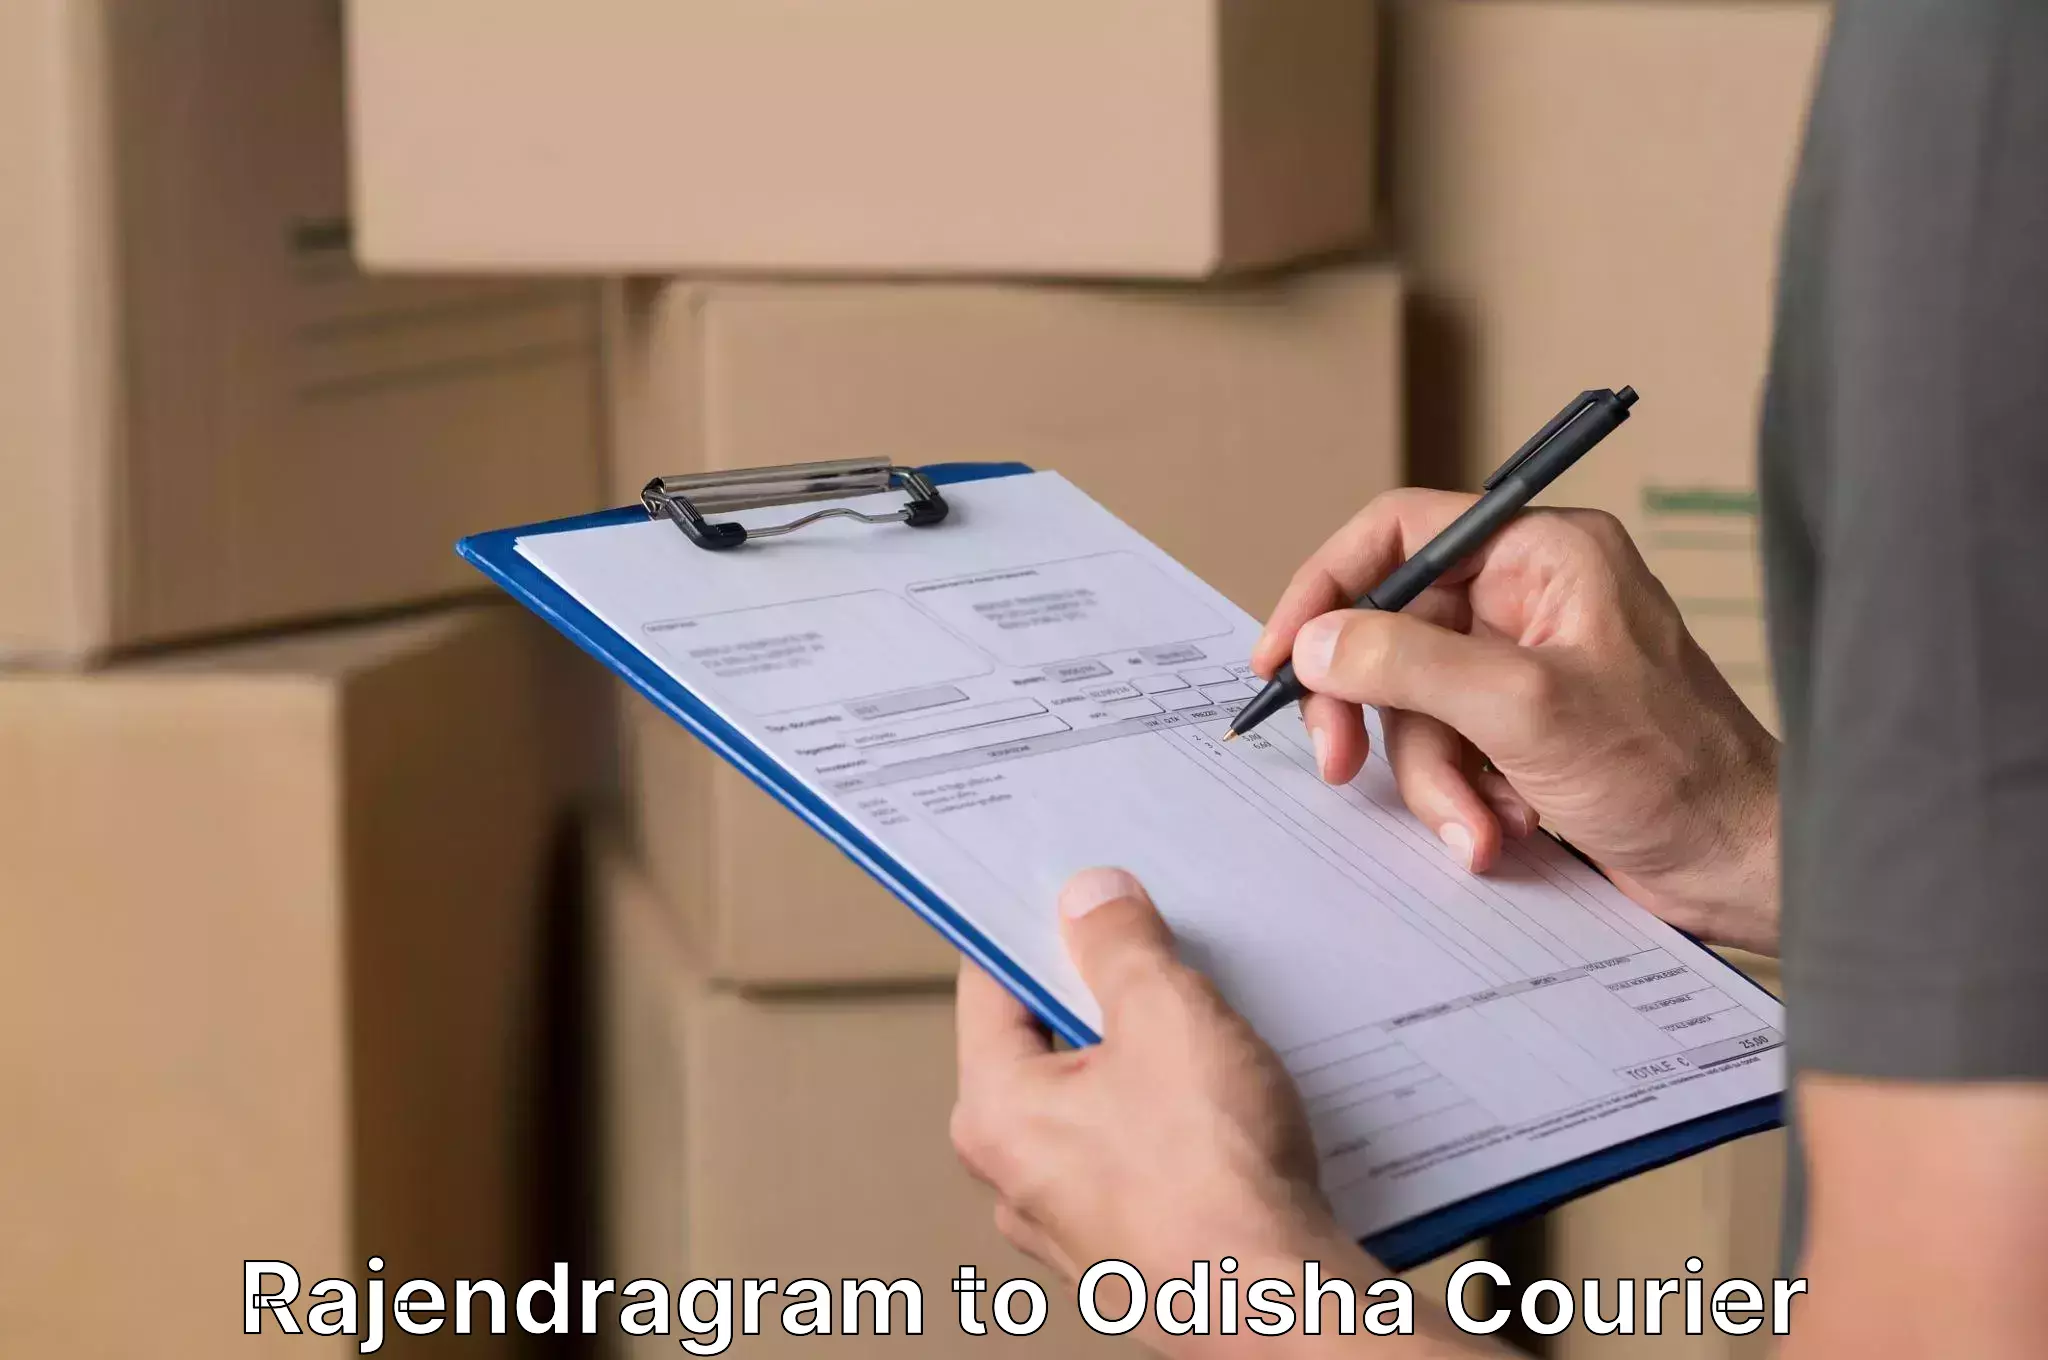 Furniture transport service Rajendragram to Odisha